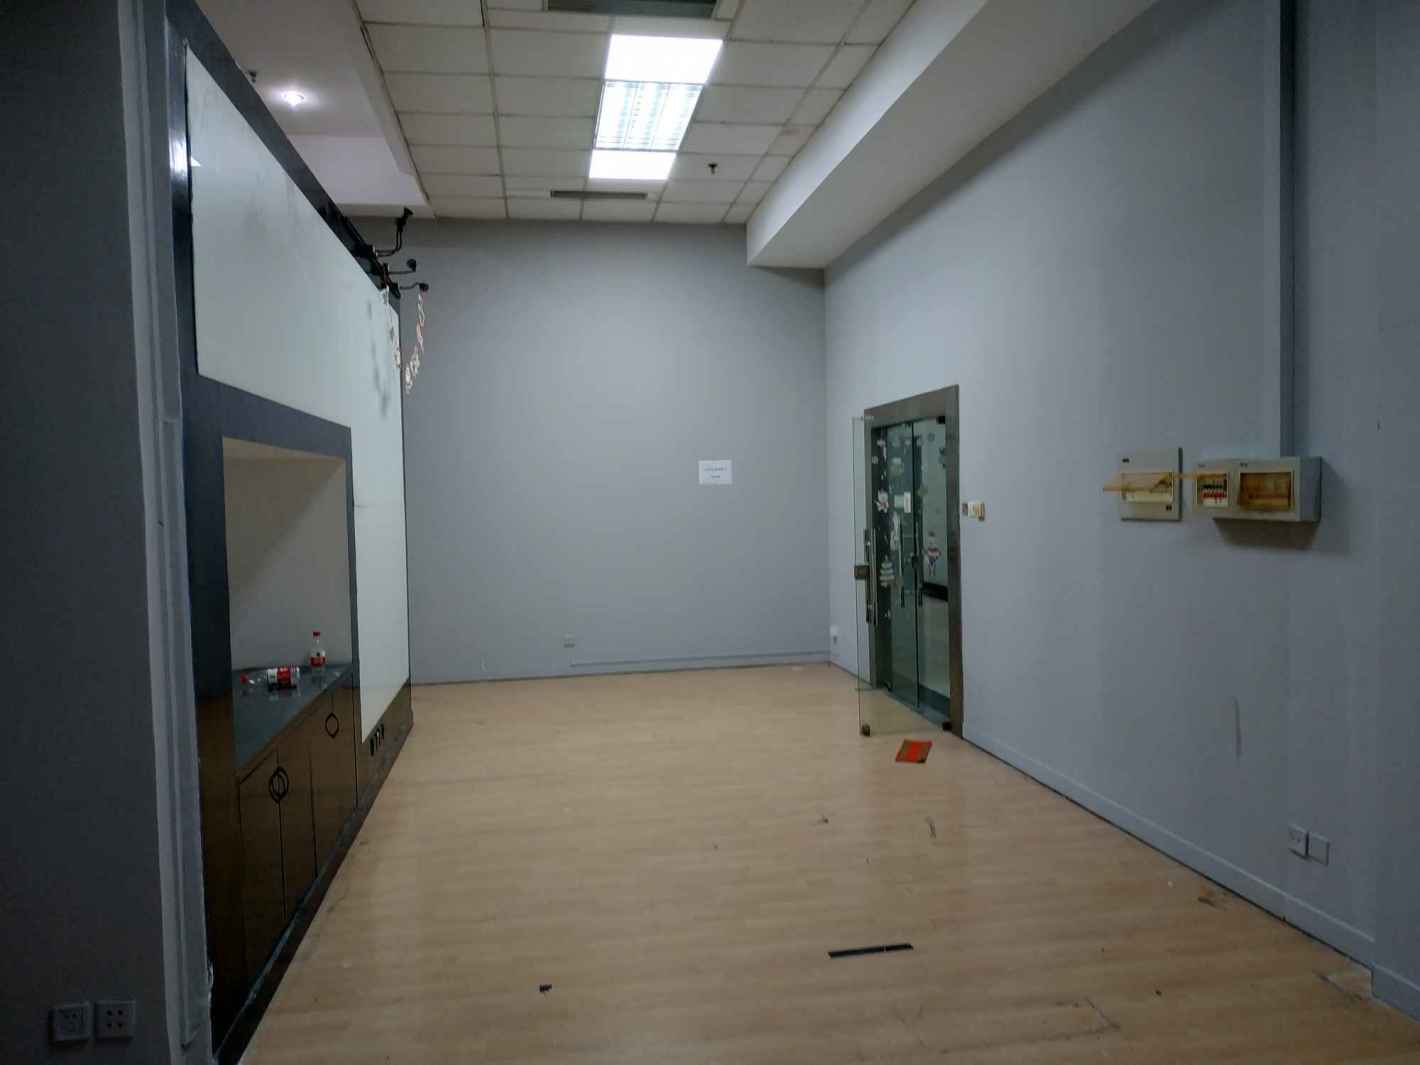 上海慧谷高科技创业中心310平米办公室出租-租金价格3.55元/m²/天